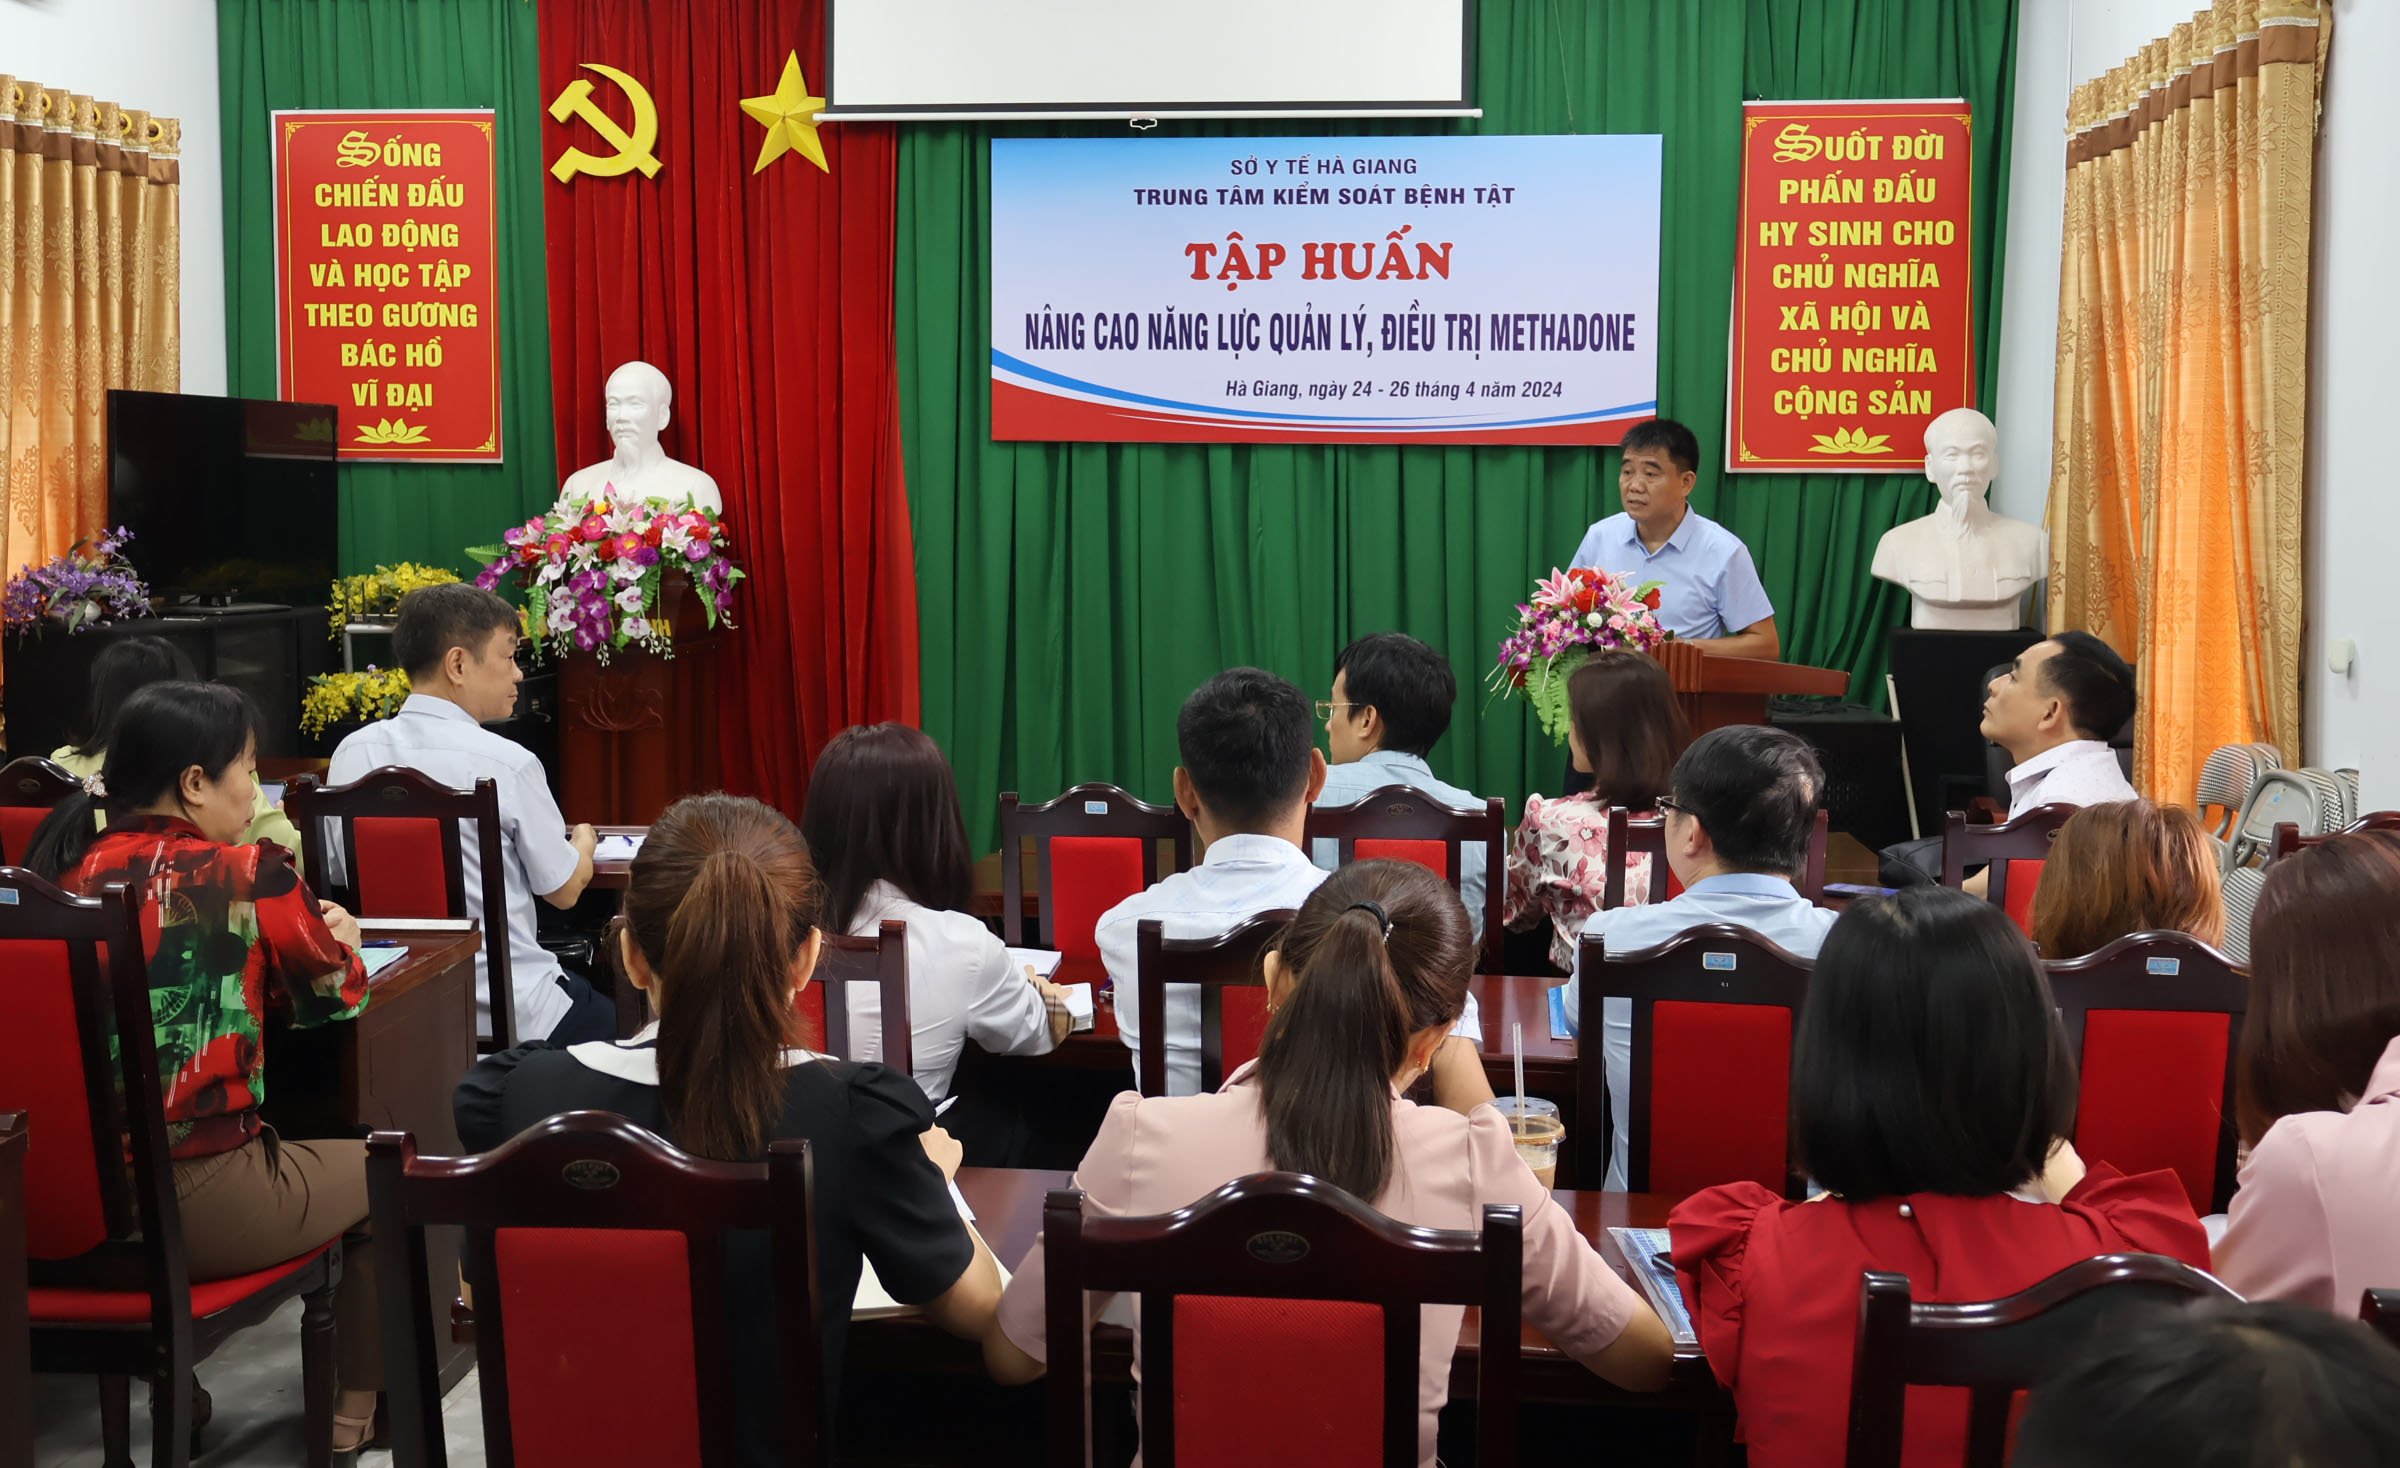 Đồng chí Nông Văn Huyến – Phó Giám đốc Trung tâm Kiểm soát bệnh tật phát biểu khai mạc lớp tập huấn